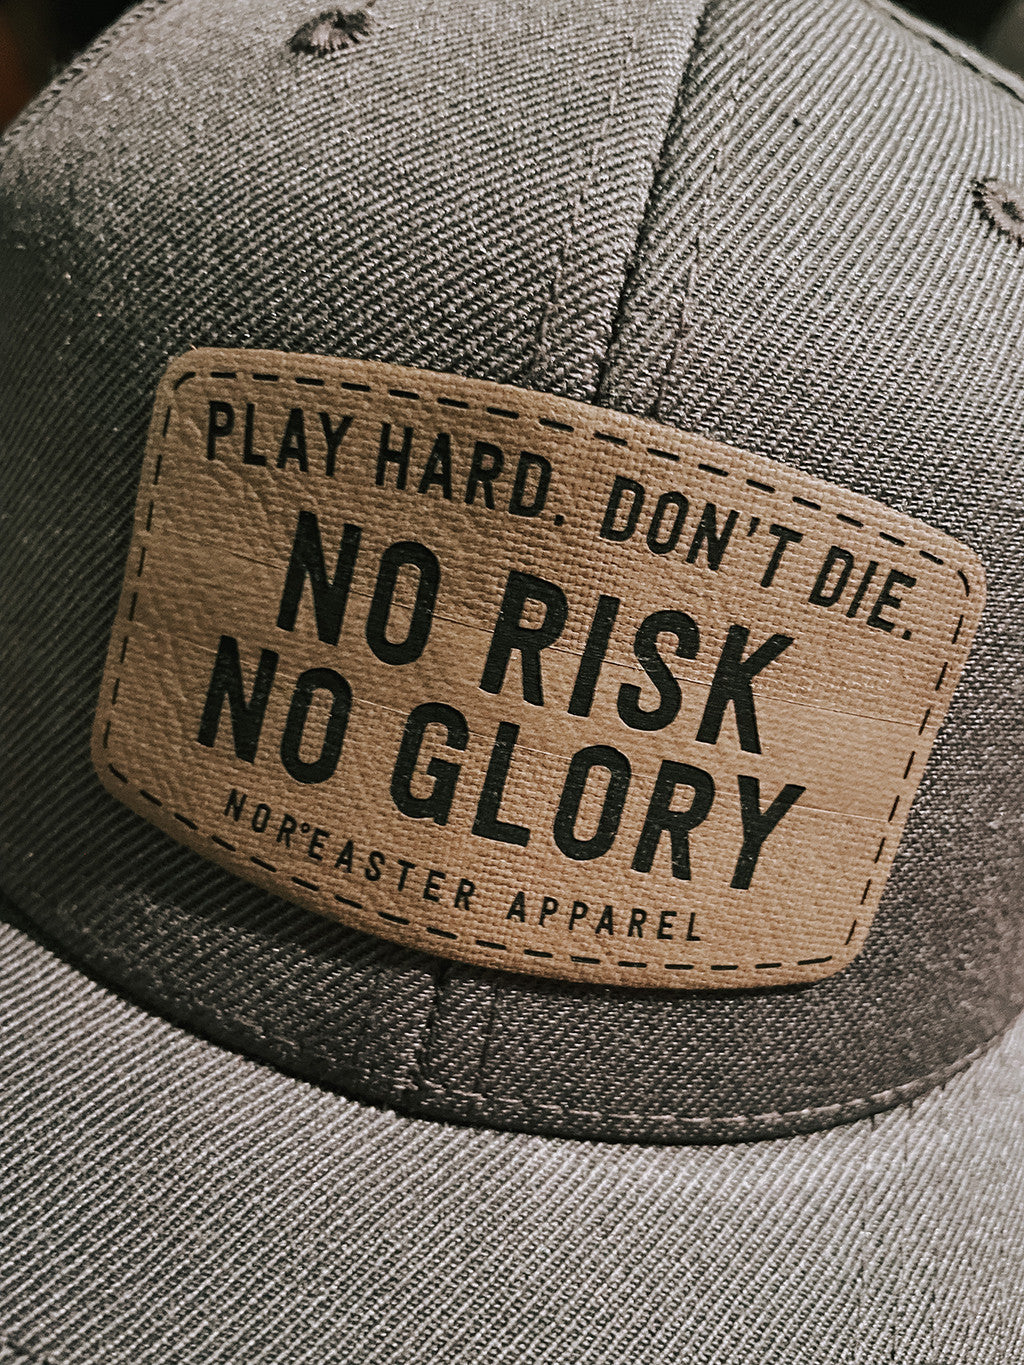 No Risk No Glory Retro Trucker Hat Solid Back